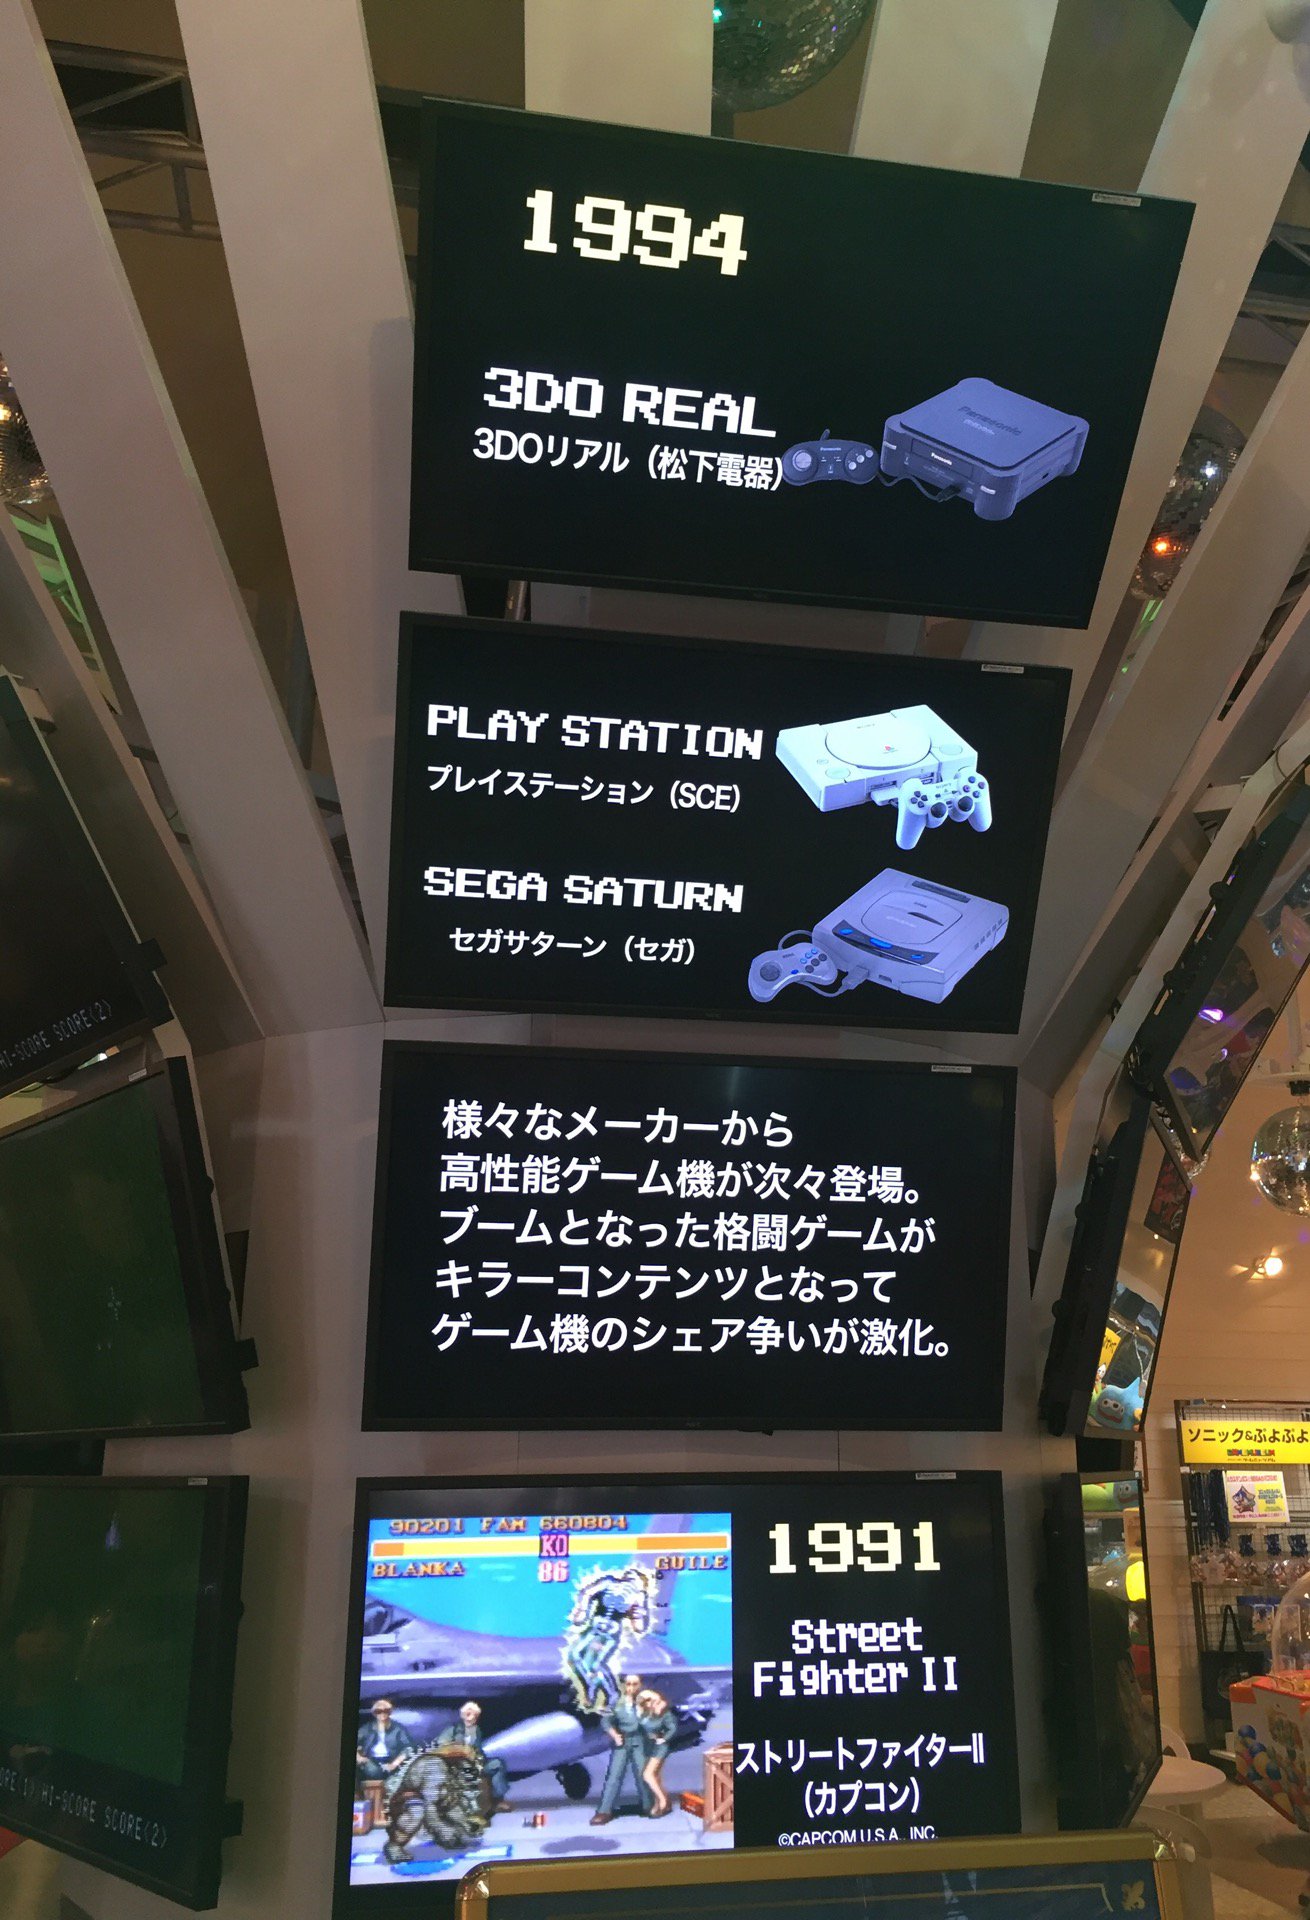 そういえば 3DO REAL なんてのもあったね。 (@ ゲームミュージアム in 佐世保市, 長崎県)  